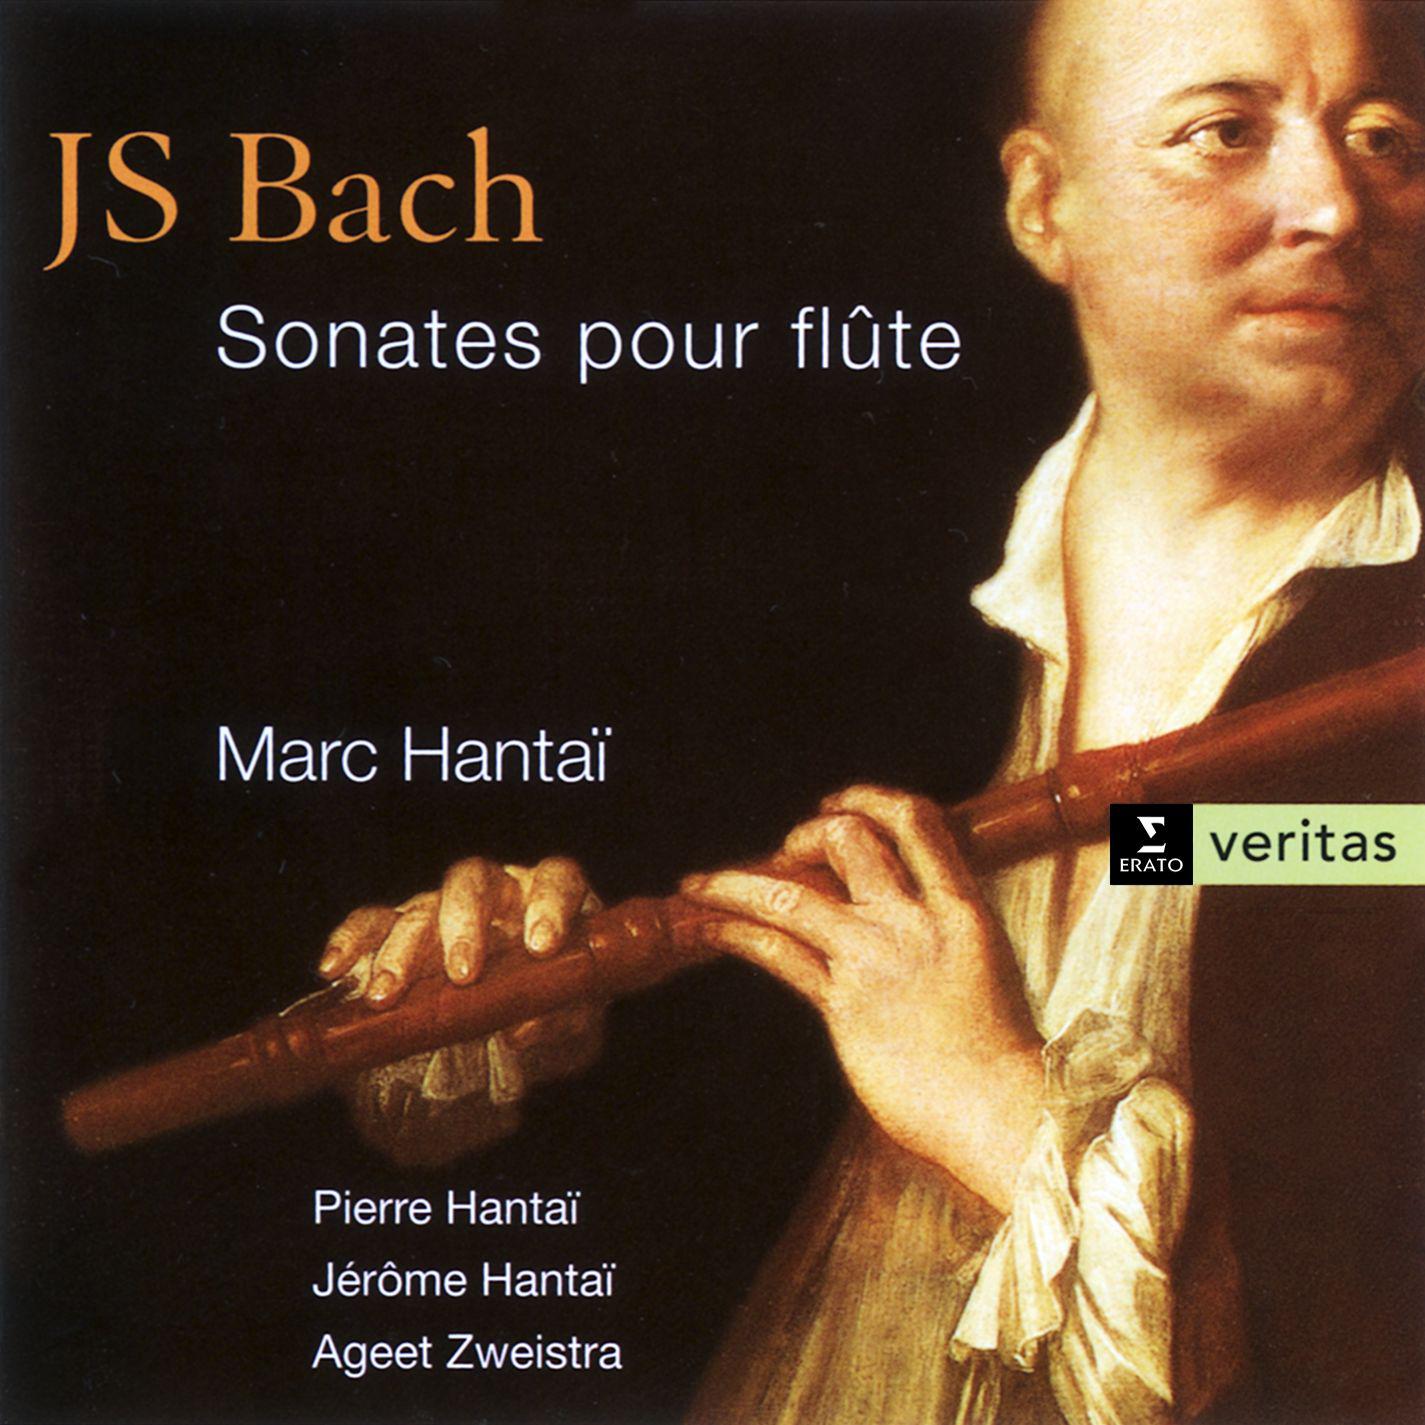 Partita in A minor for solo flute BWV 1013: III. Sarabande